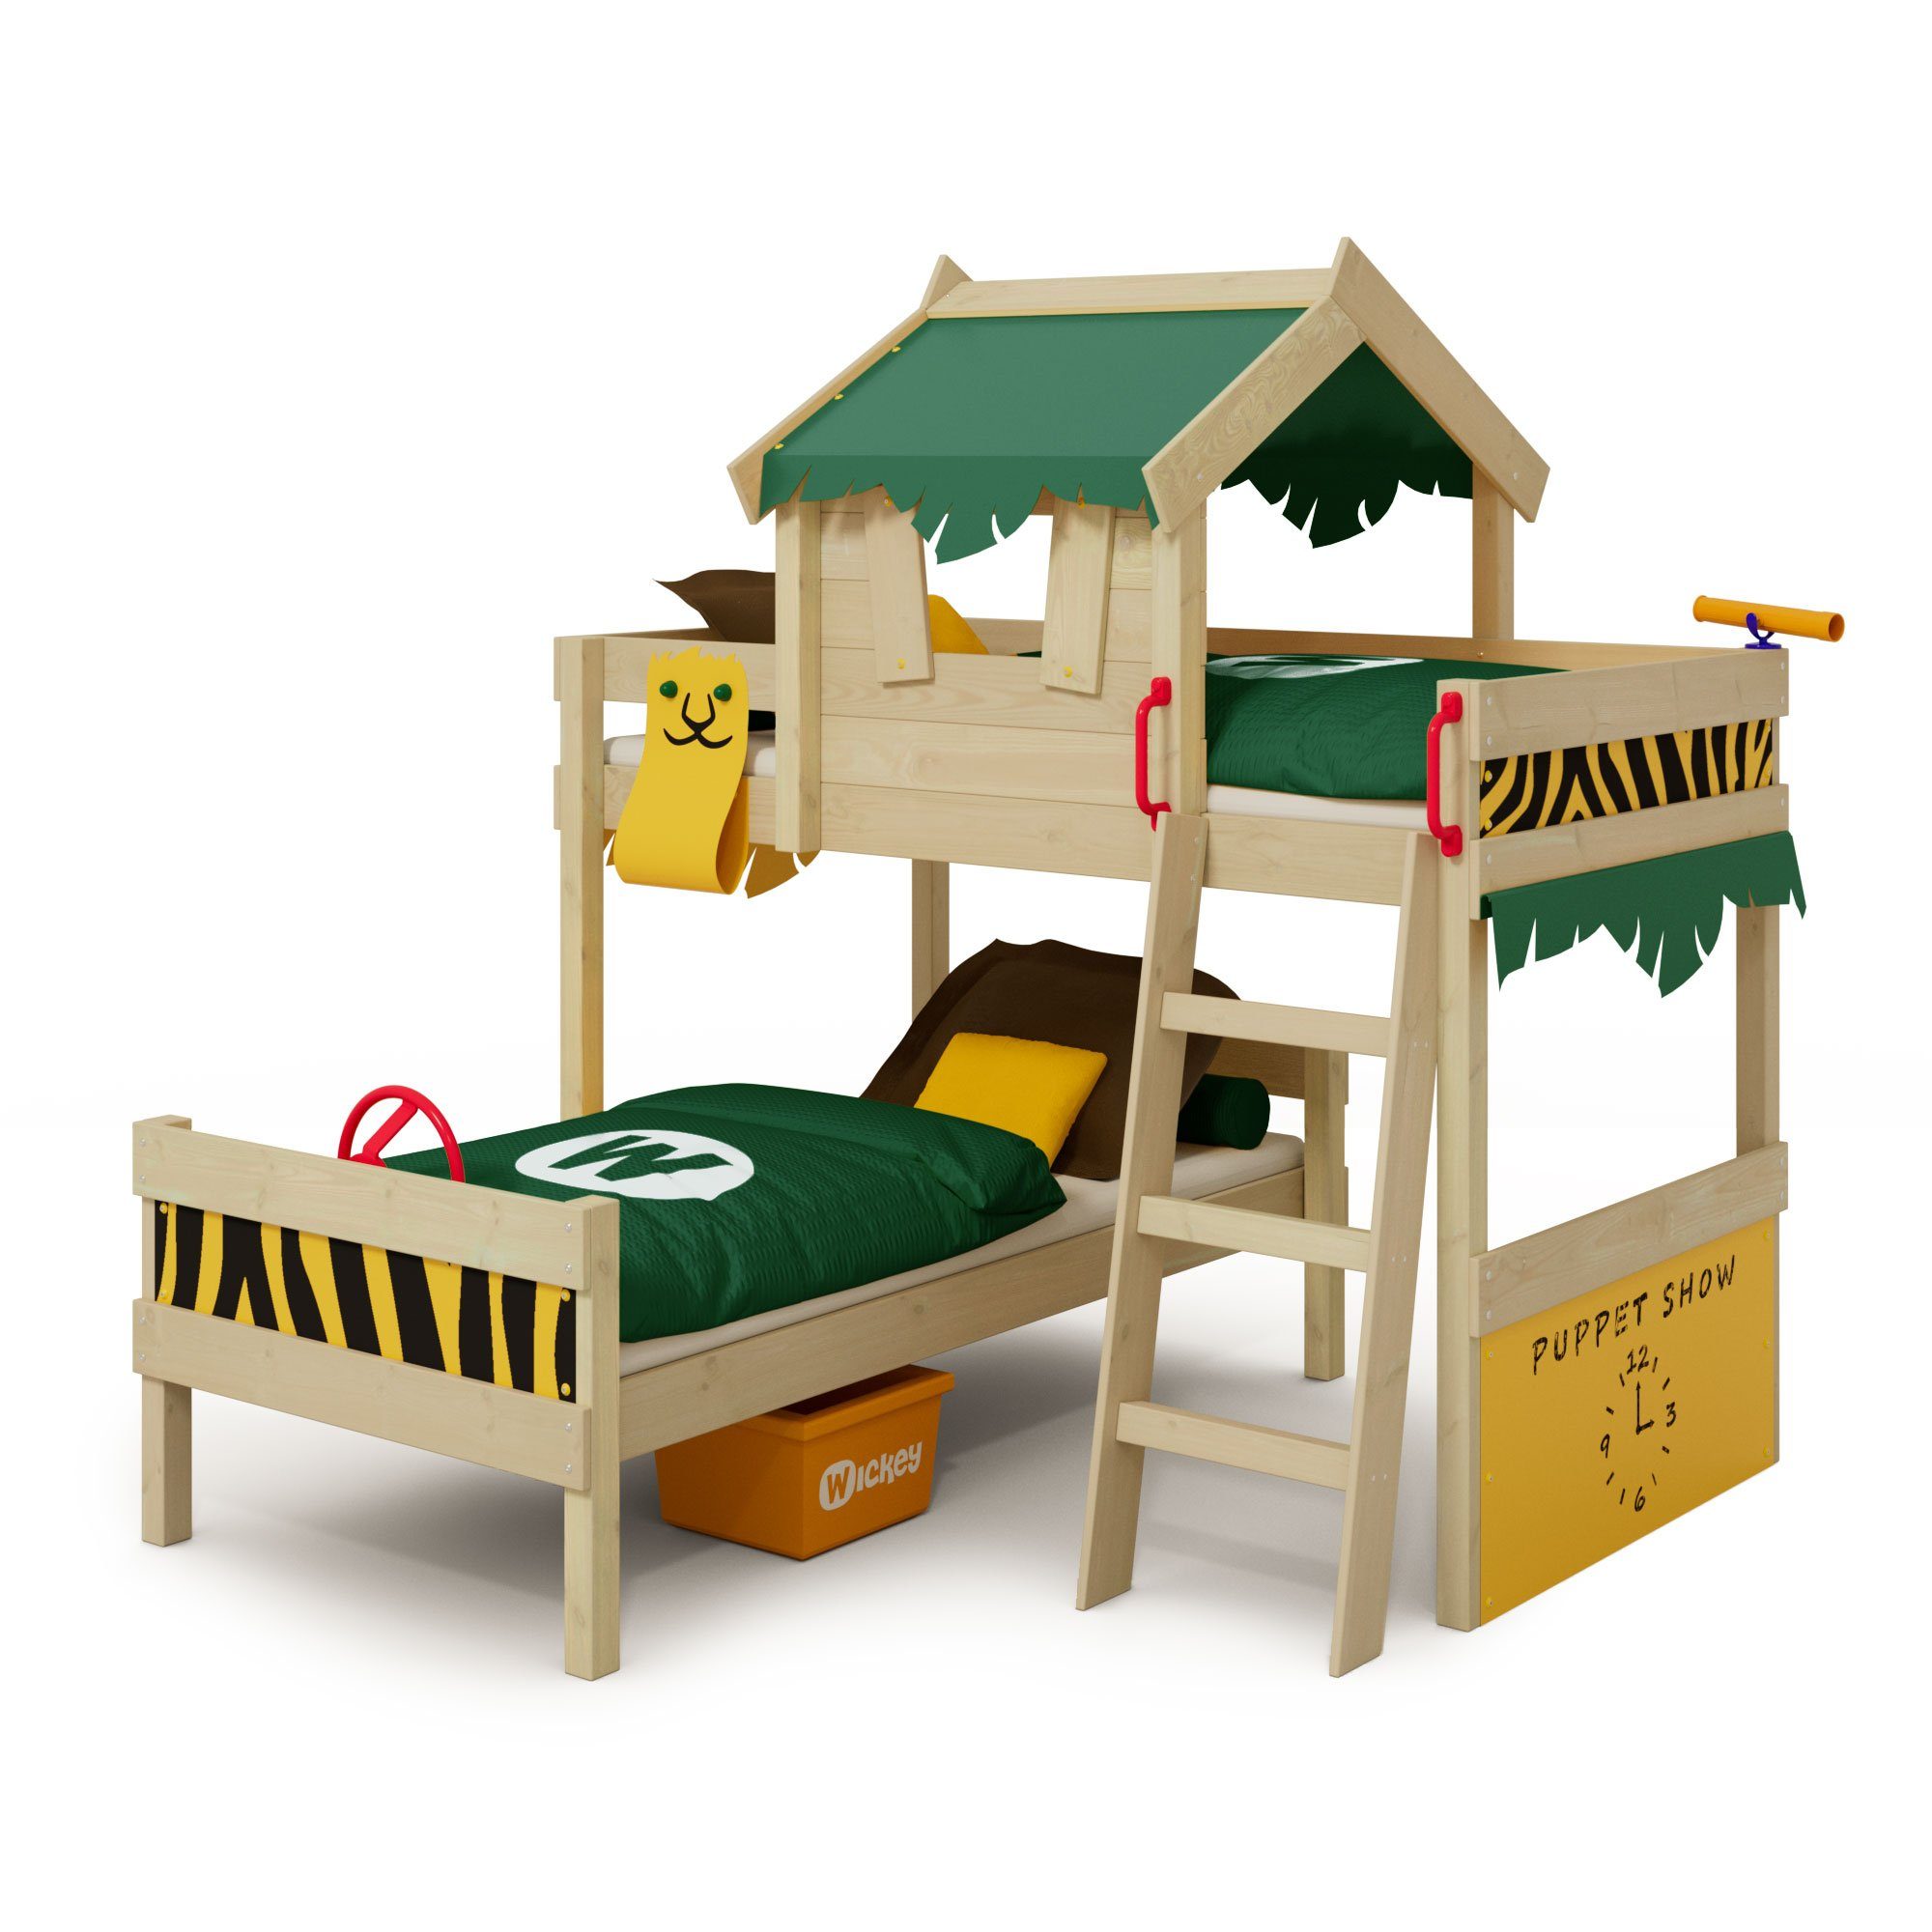 Wickey Kinderbett Crazy Jungle, Spielbett, 90 x 200 cm Hochbett (Holzpaket aus Pfosten und Brettern, Spielbett für Kinder), Massivholzbrett grün/gelb